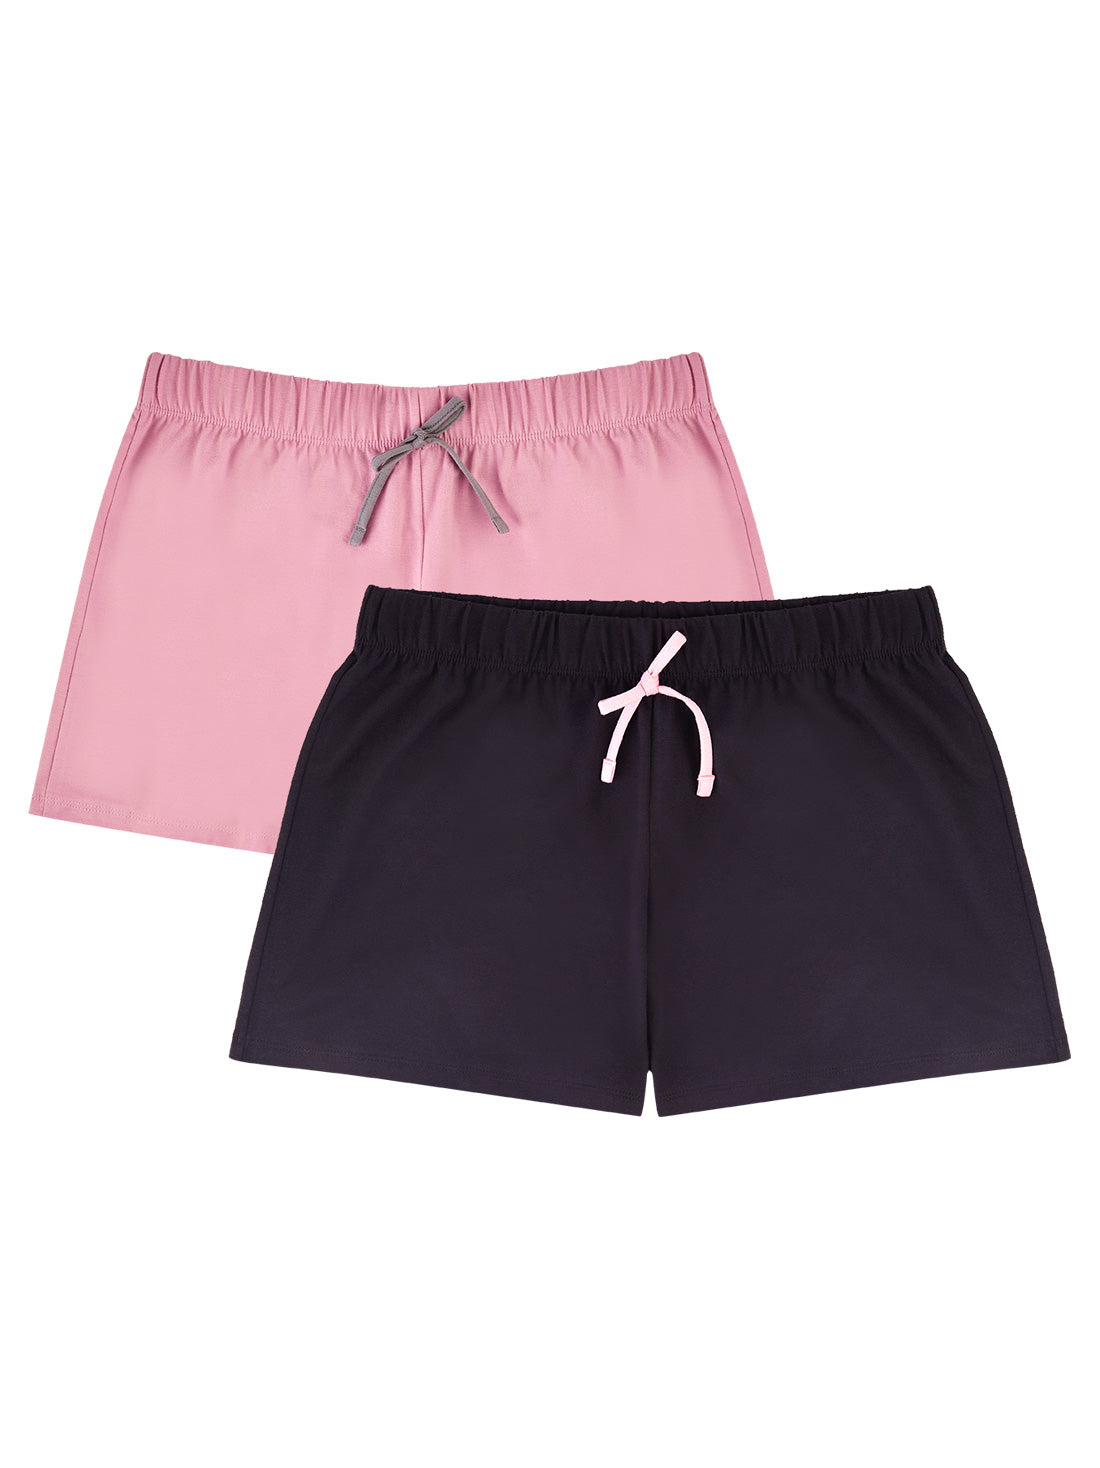 Two-Pack Shorts - 79019 - Affordable & Stylish! | Ilusion | Sportshorts